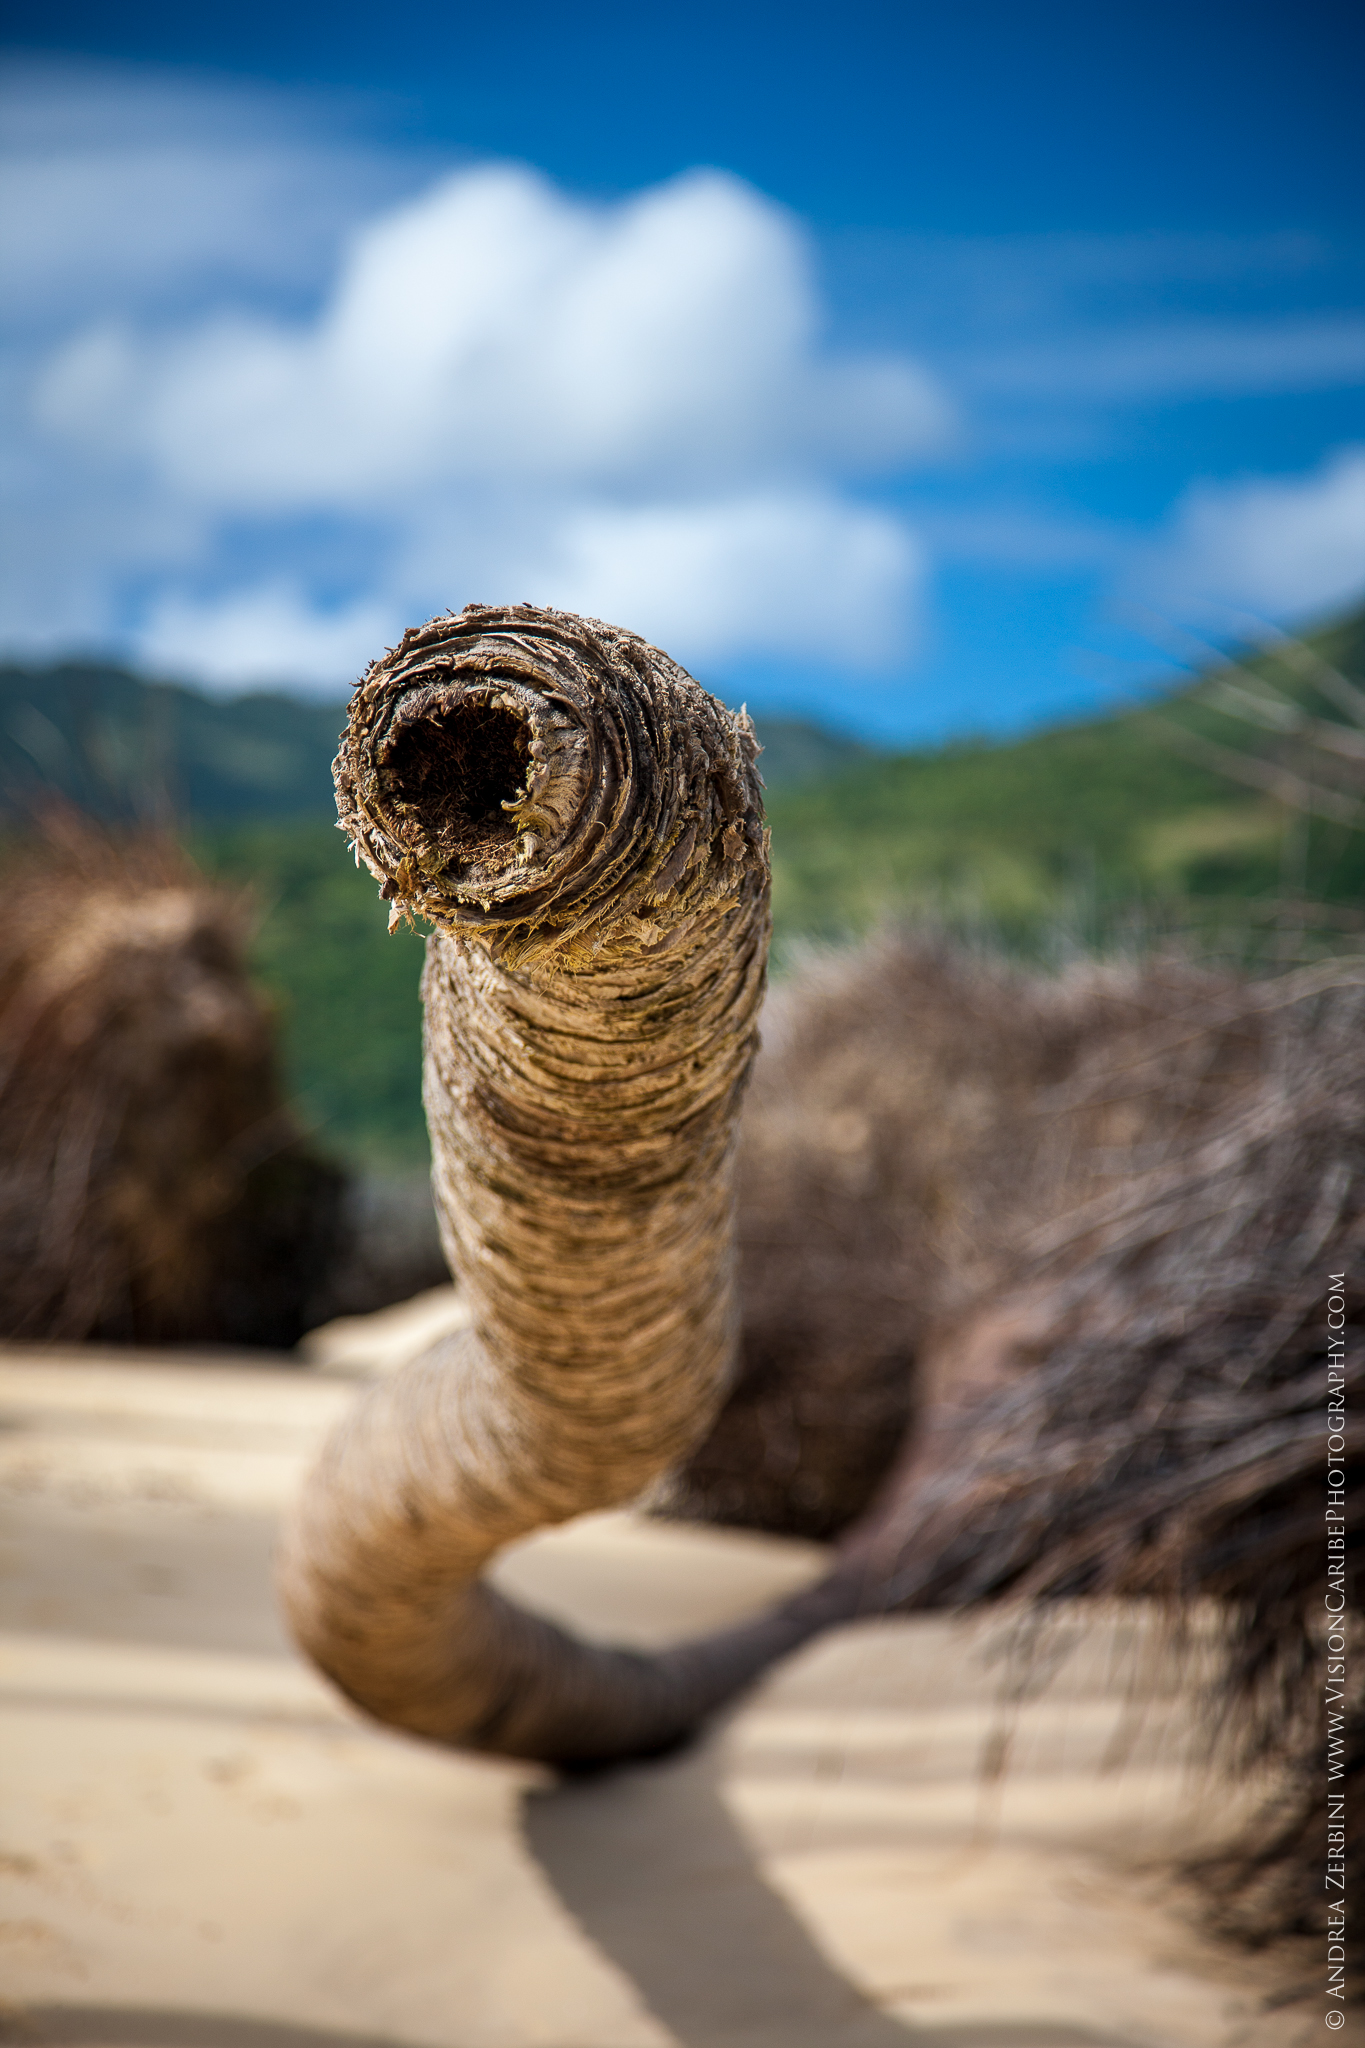 Caribbean Giant Sandworm...